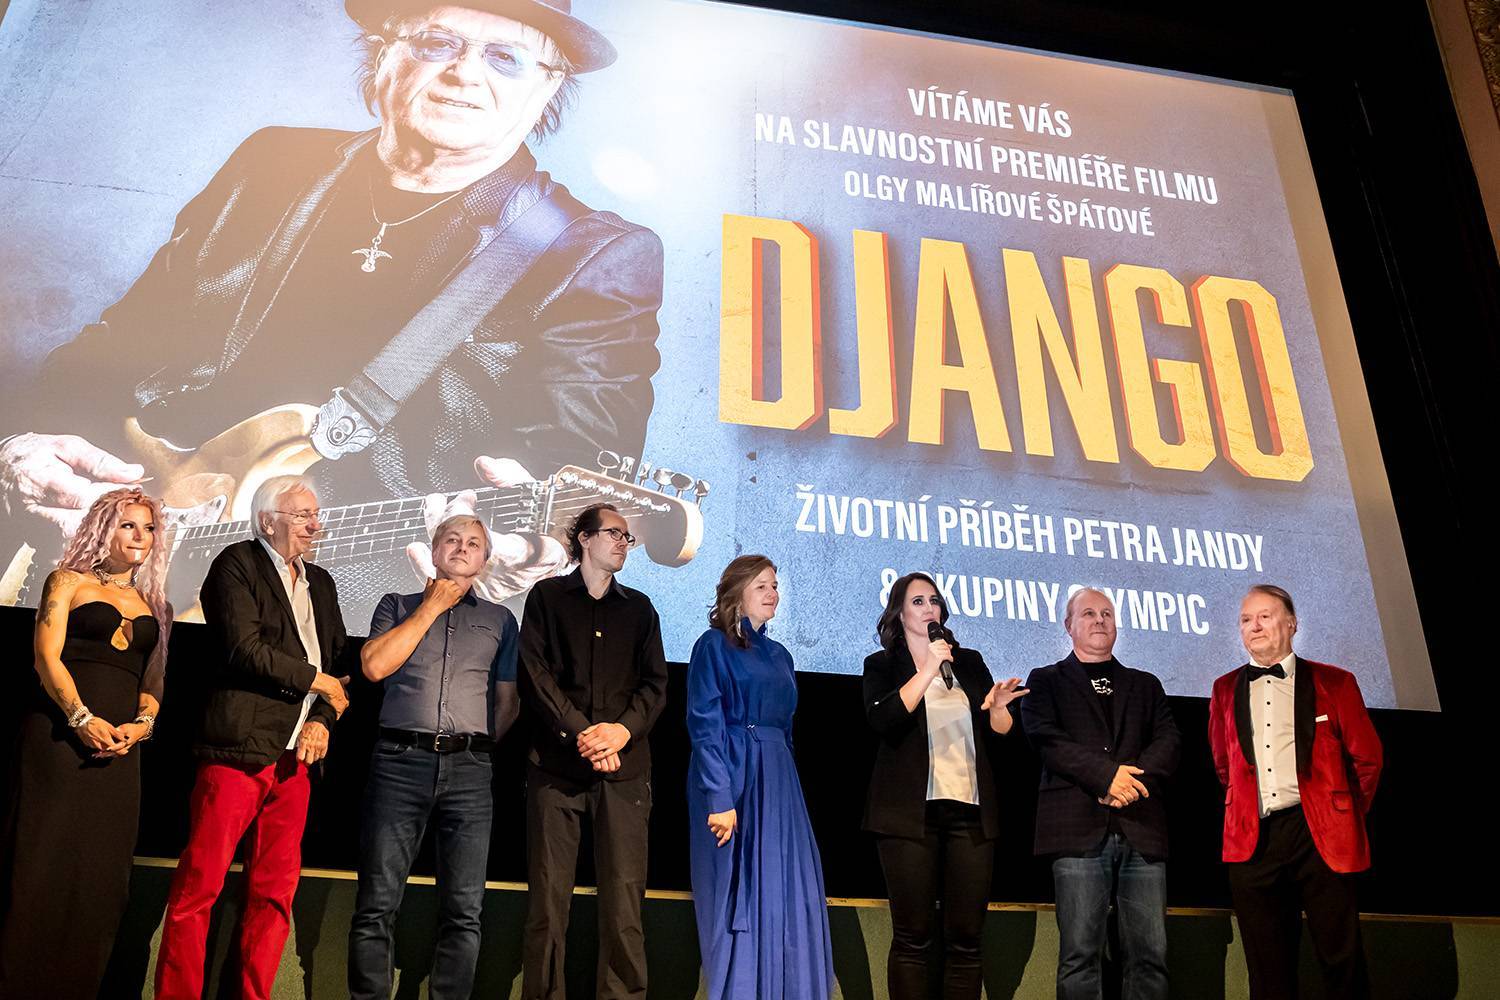 LIVE: Film Django o Petru Jandovi odkrývá i temnou minulost skupiny Olympic  